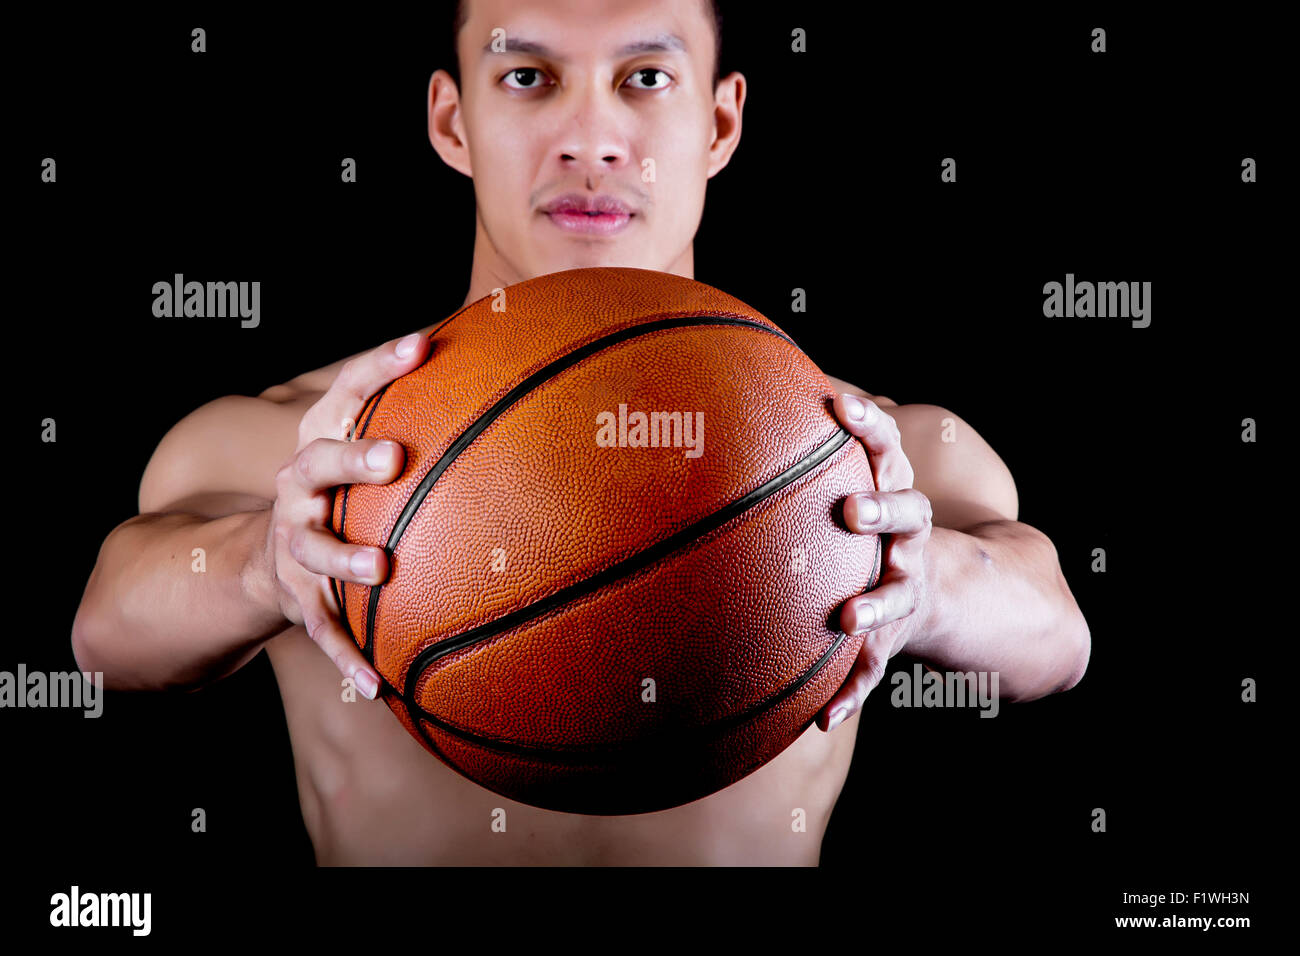 Asiatische junge Basketballspieler auf schwarzem Hintergrund Stockfoto